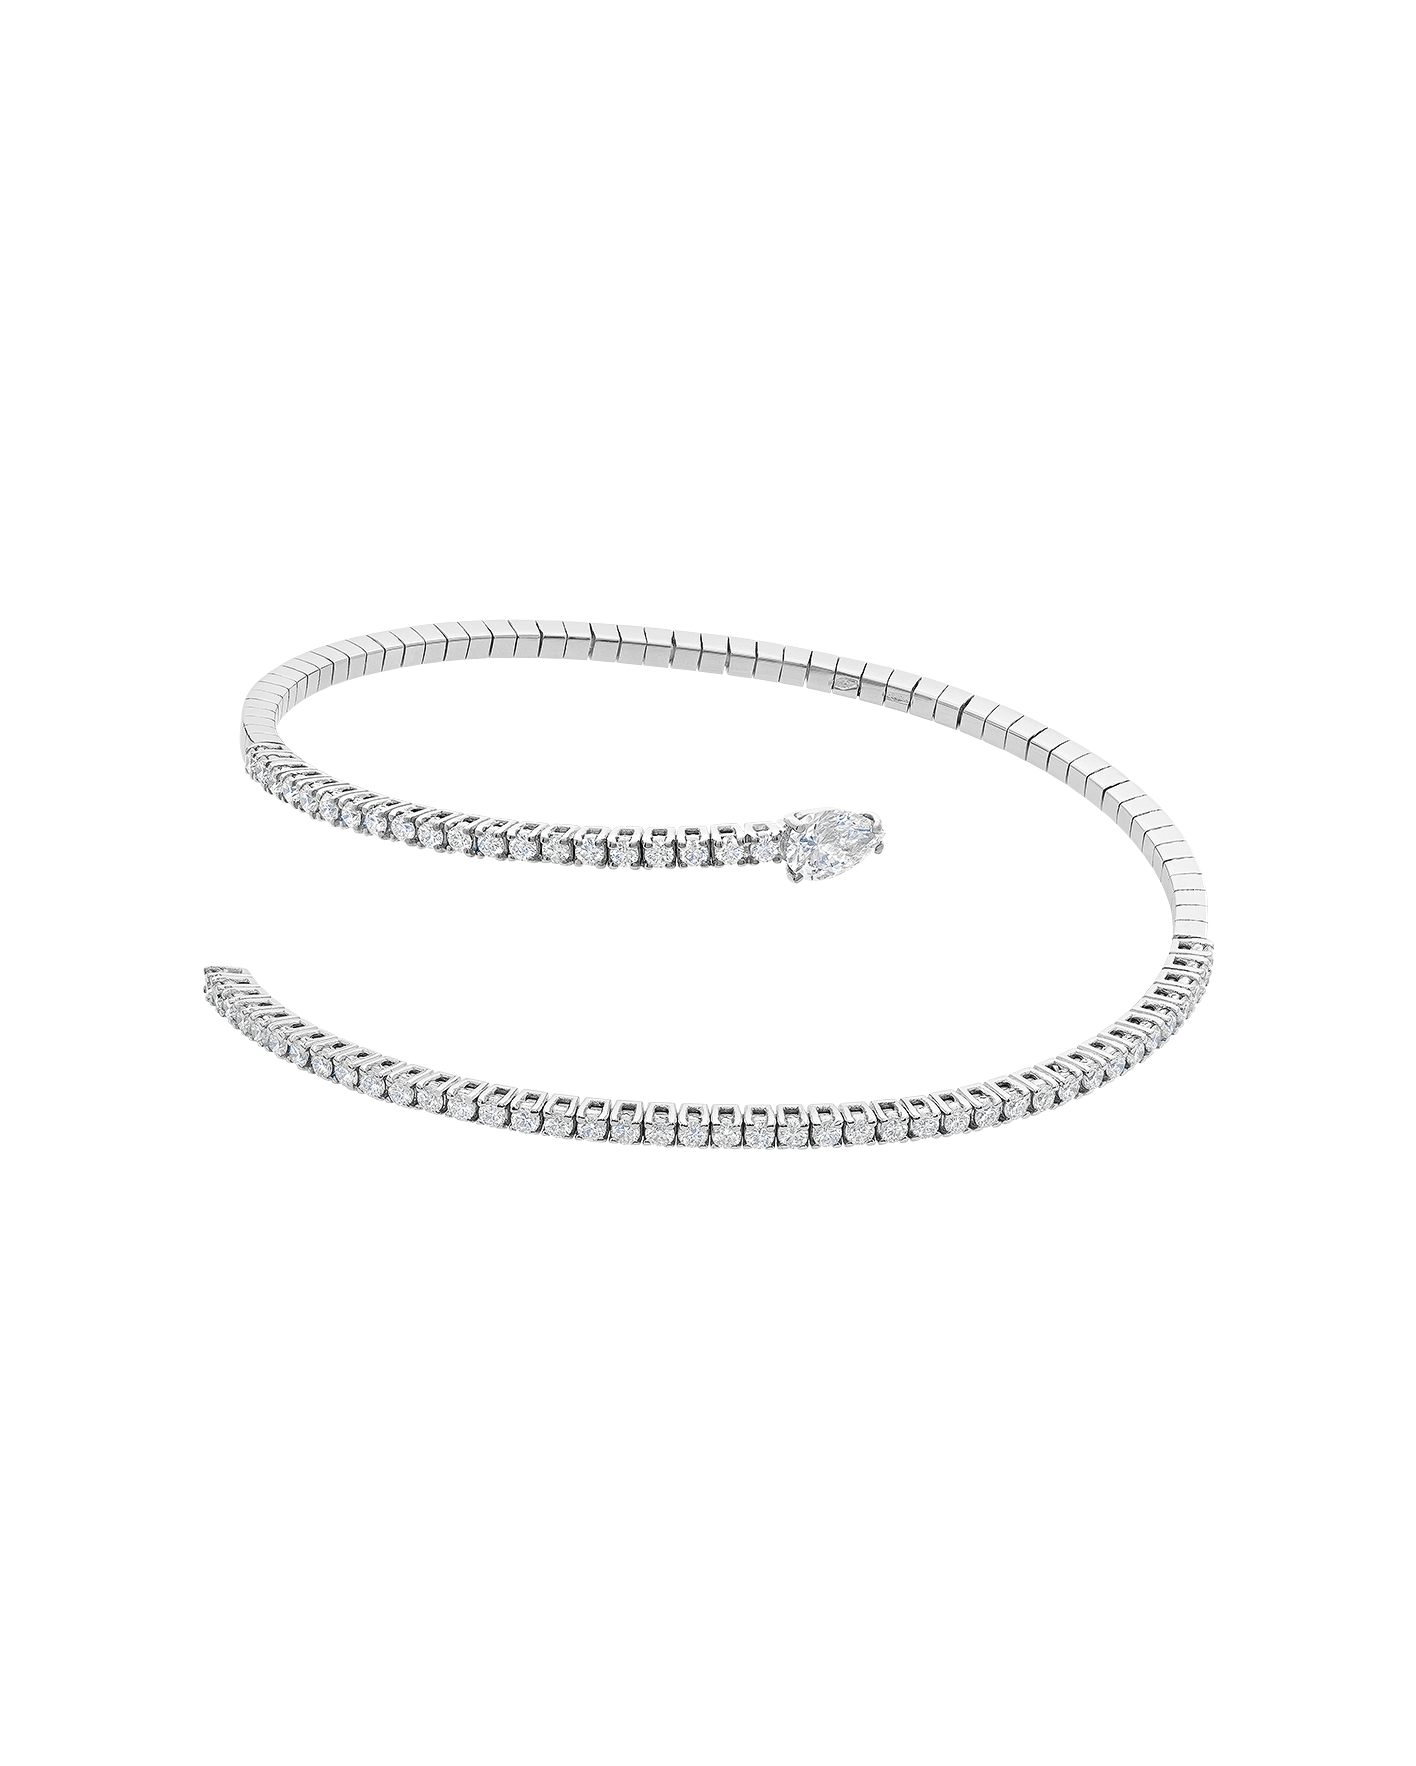 brazalete peyrelongue espiral sencilla con diamantes